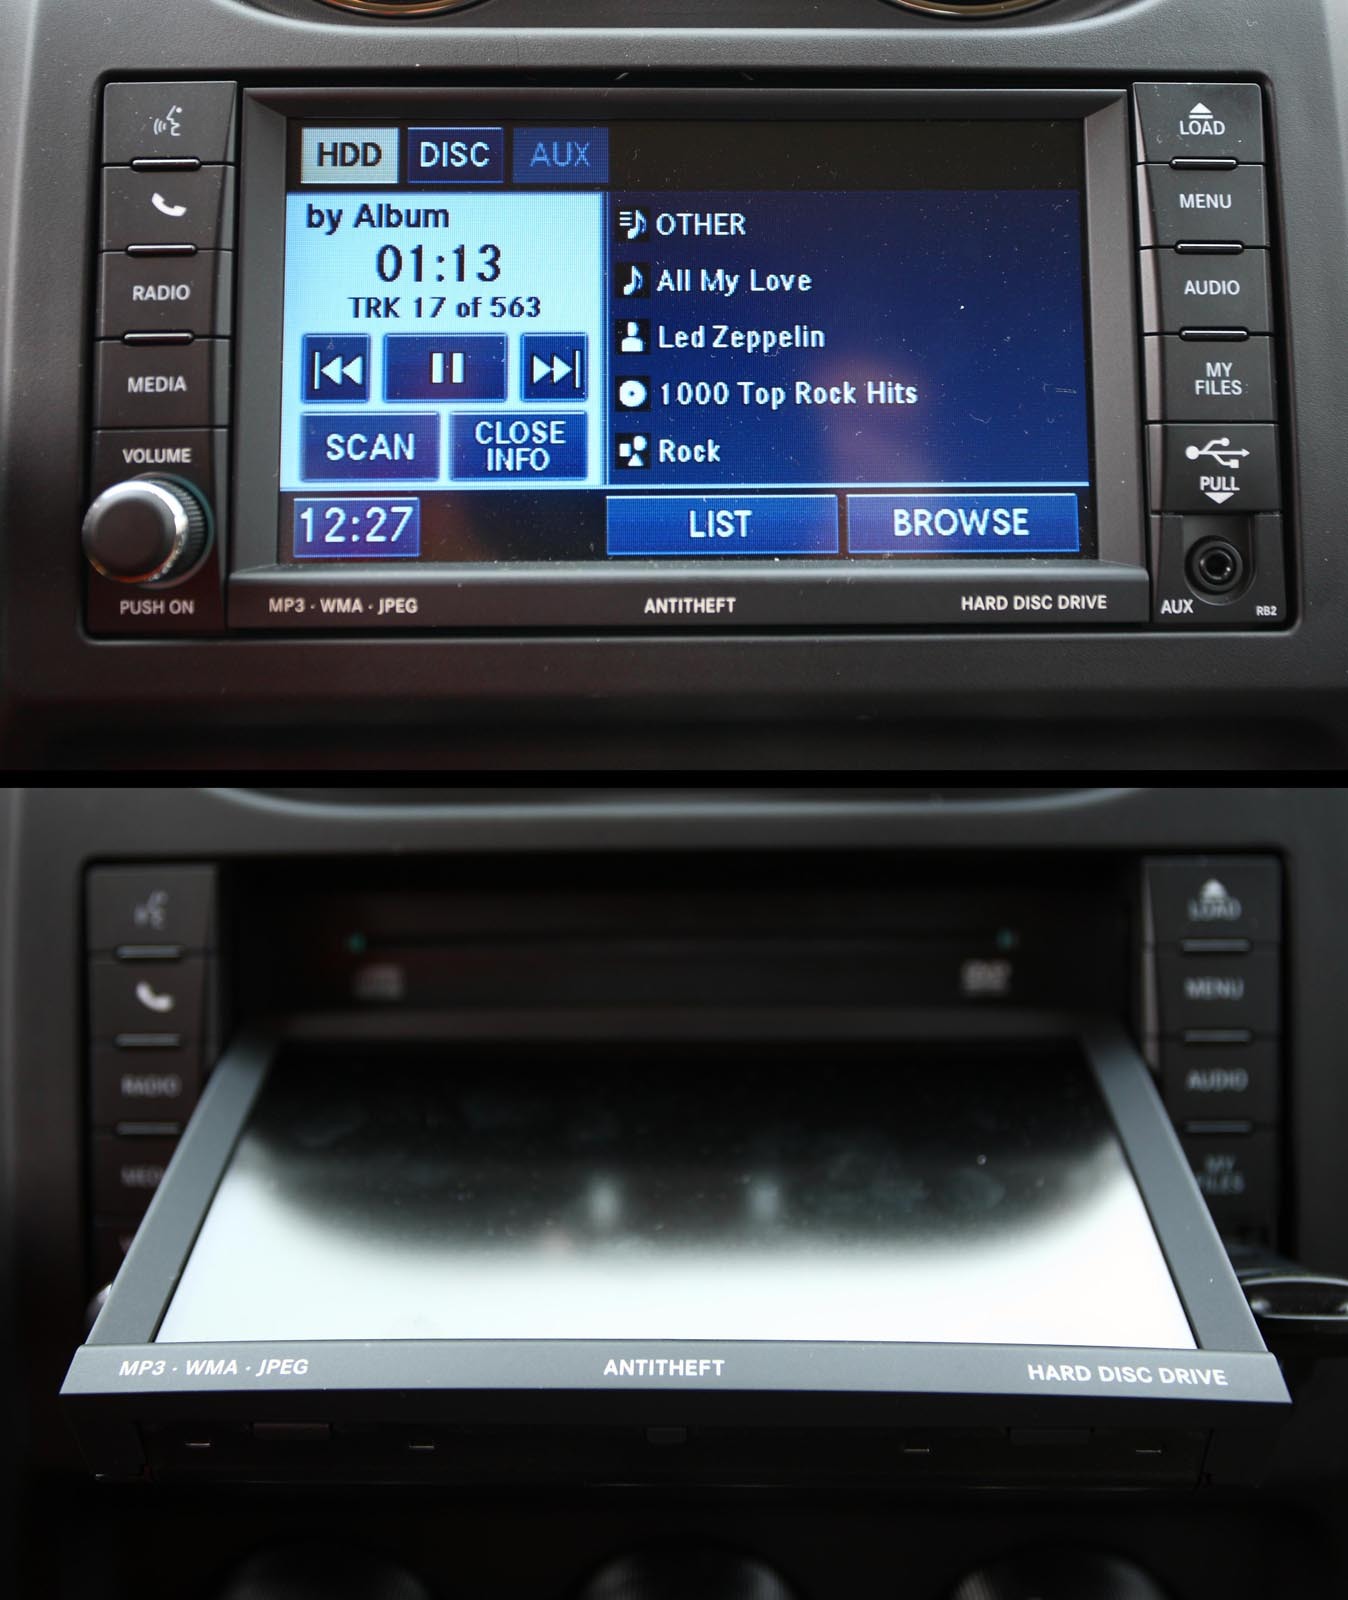 Sistem multimedia cu ecran tactil, care culiseaza pentru incarcarea CD-urilor